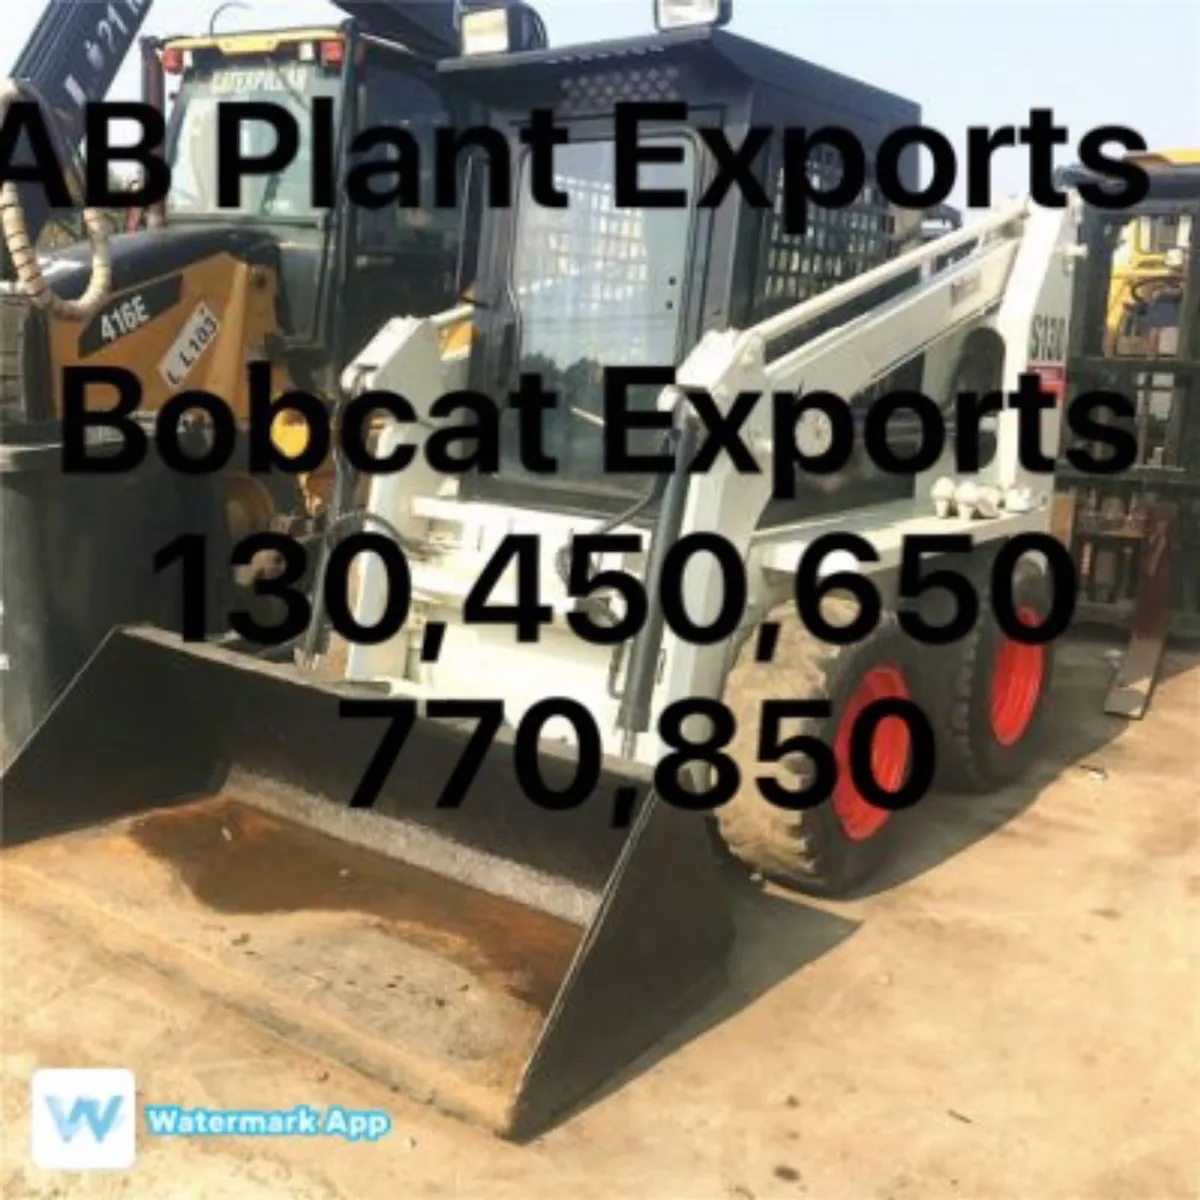 Bobcat 130 450 650 770 850 exports